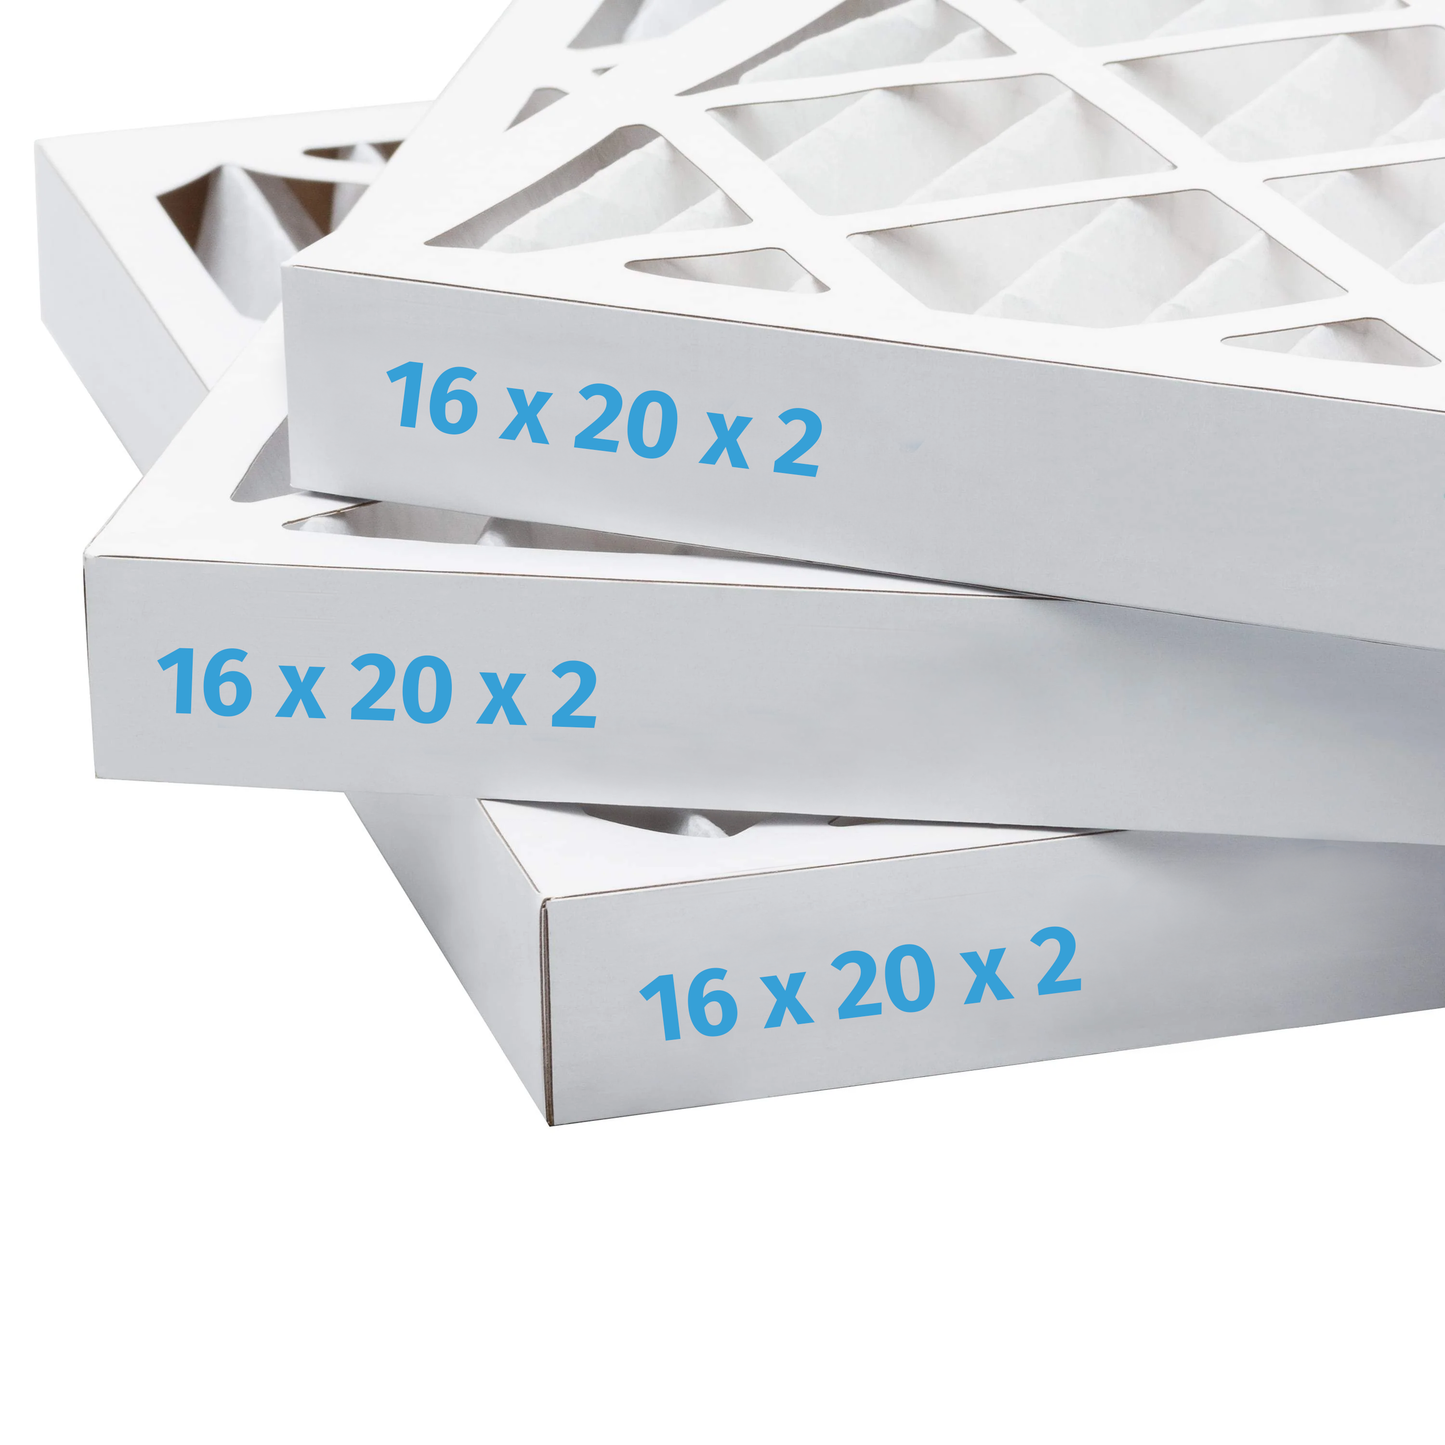 16x20x2 Air Filter - AC Furnace Filter